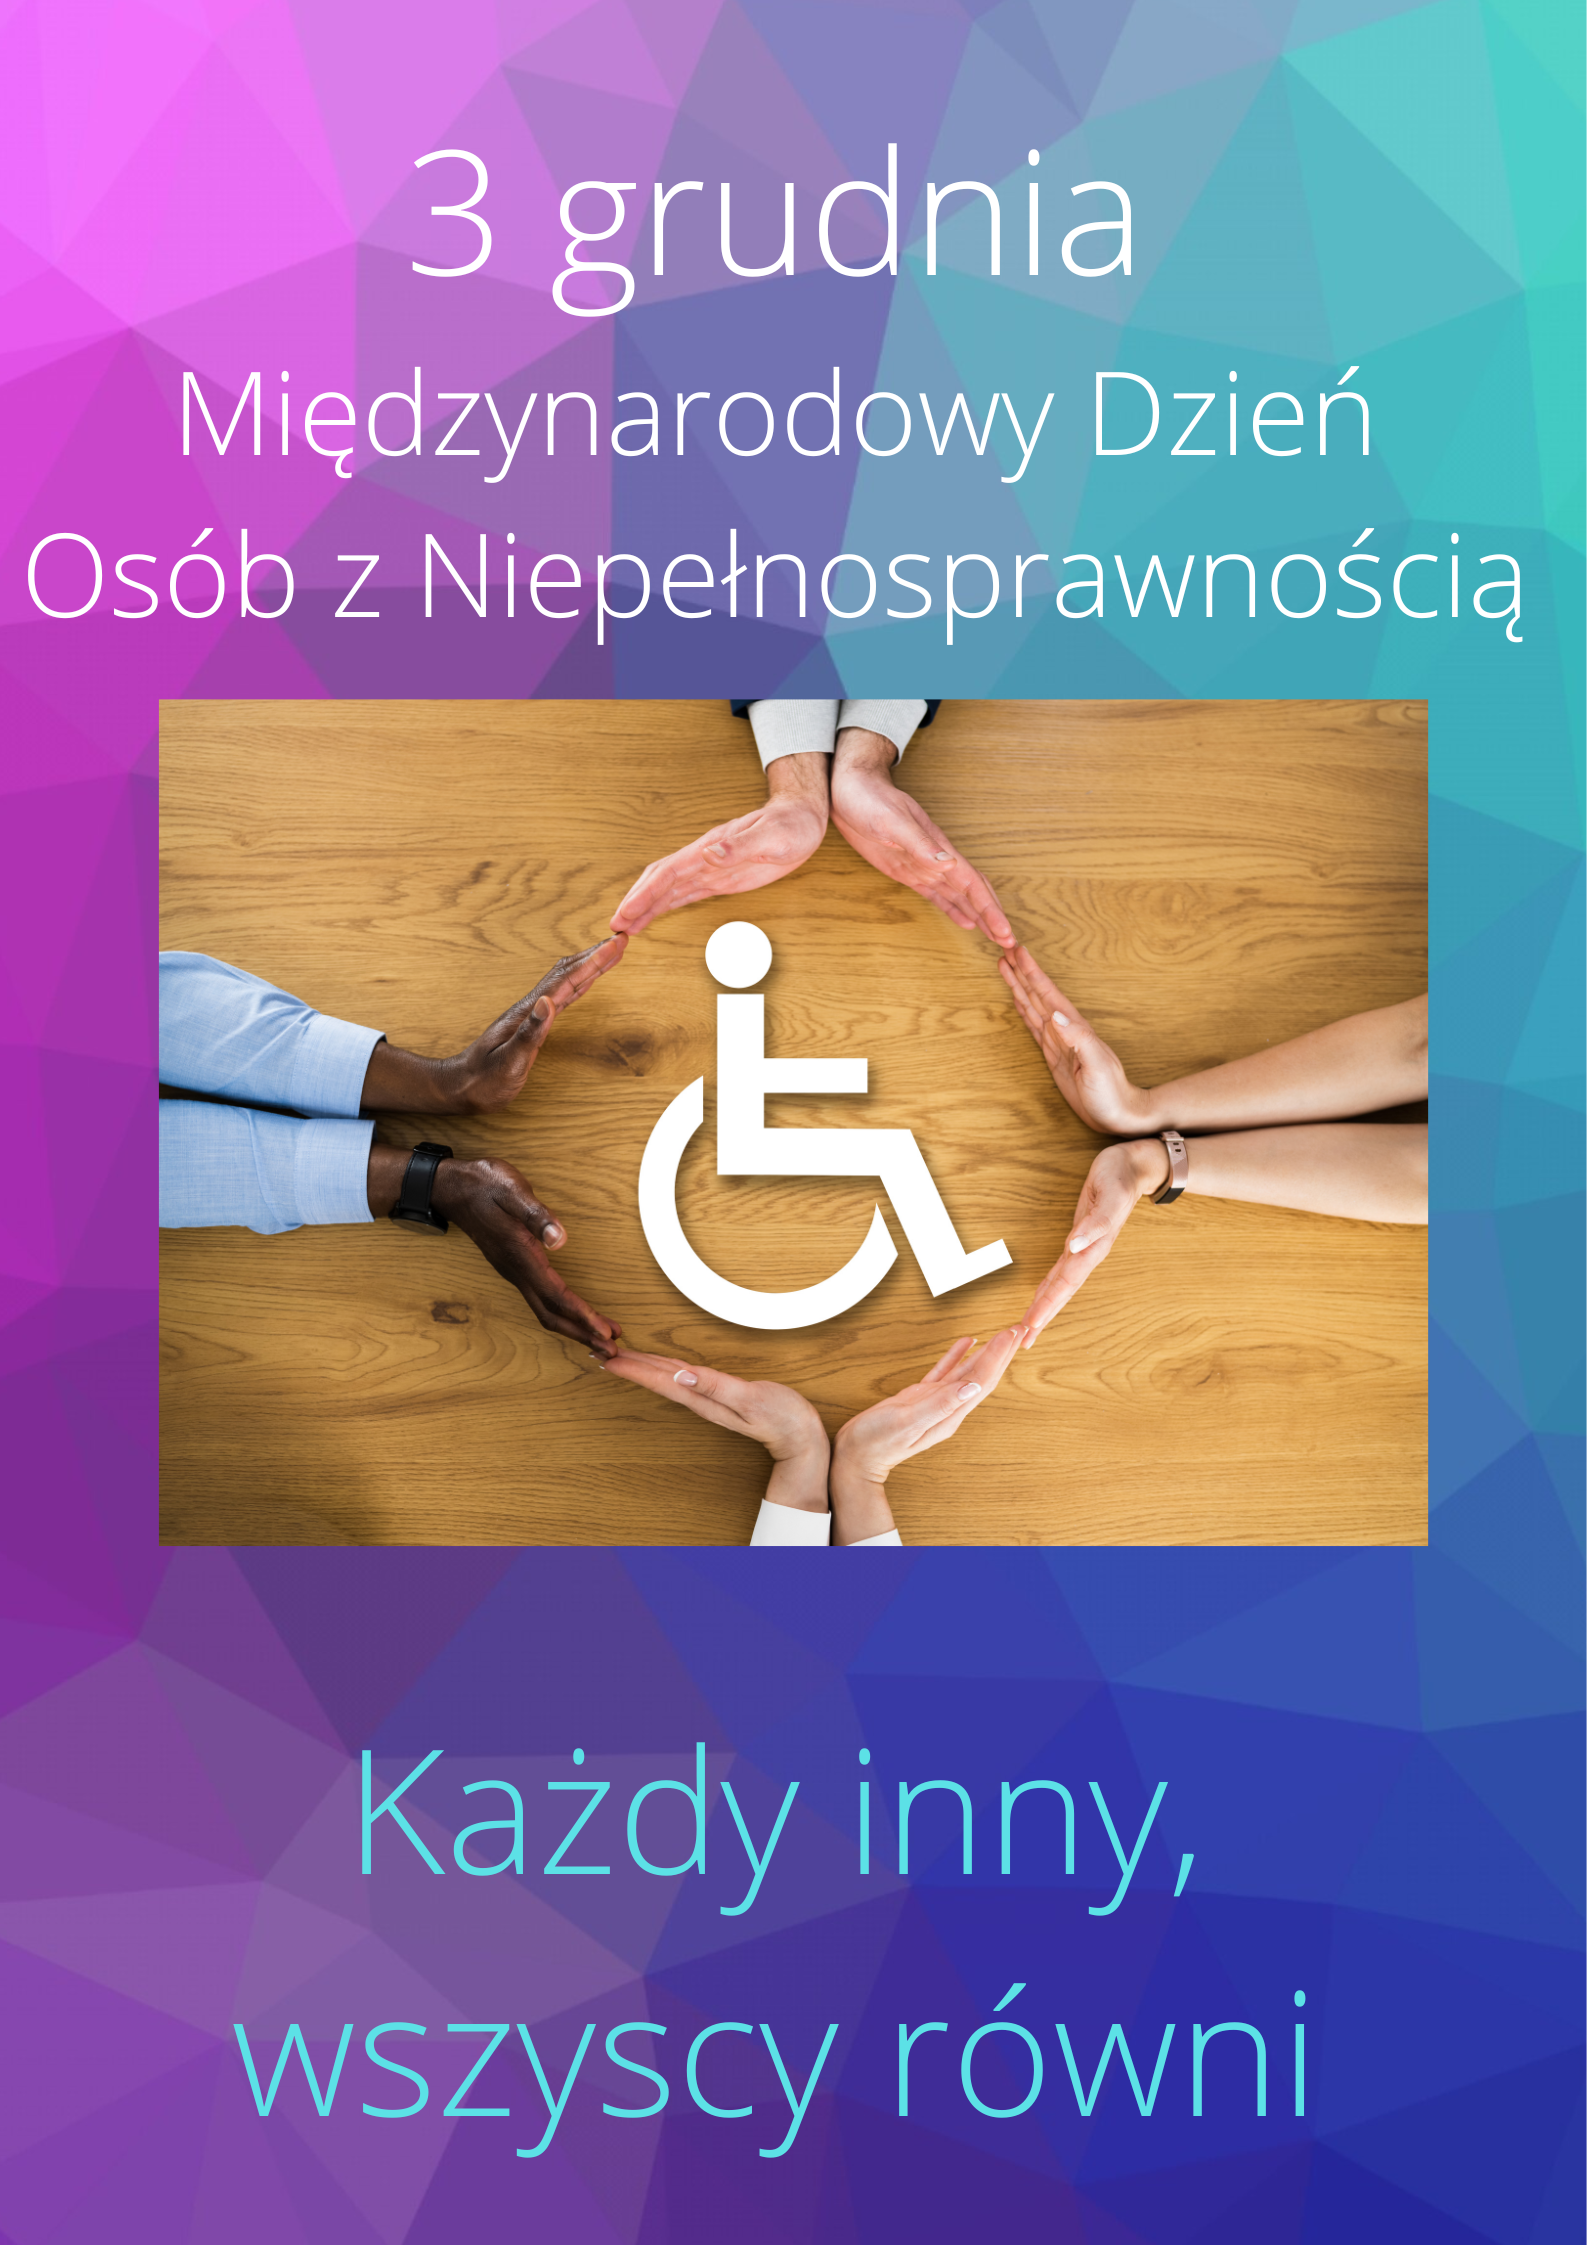 3 grudnia - Międzynarodowy Dzień Osób z Niepełnosprawnością, Każdy inny, wszyscy równi